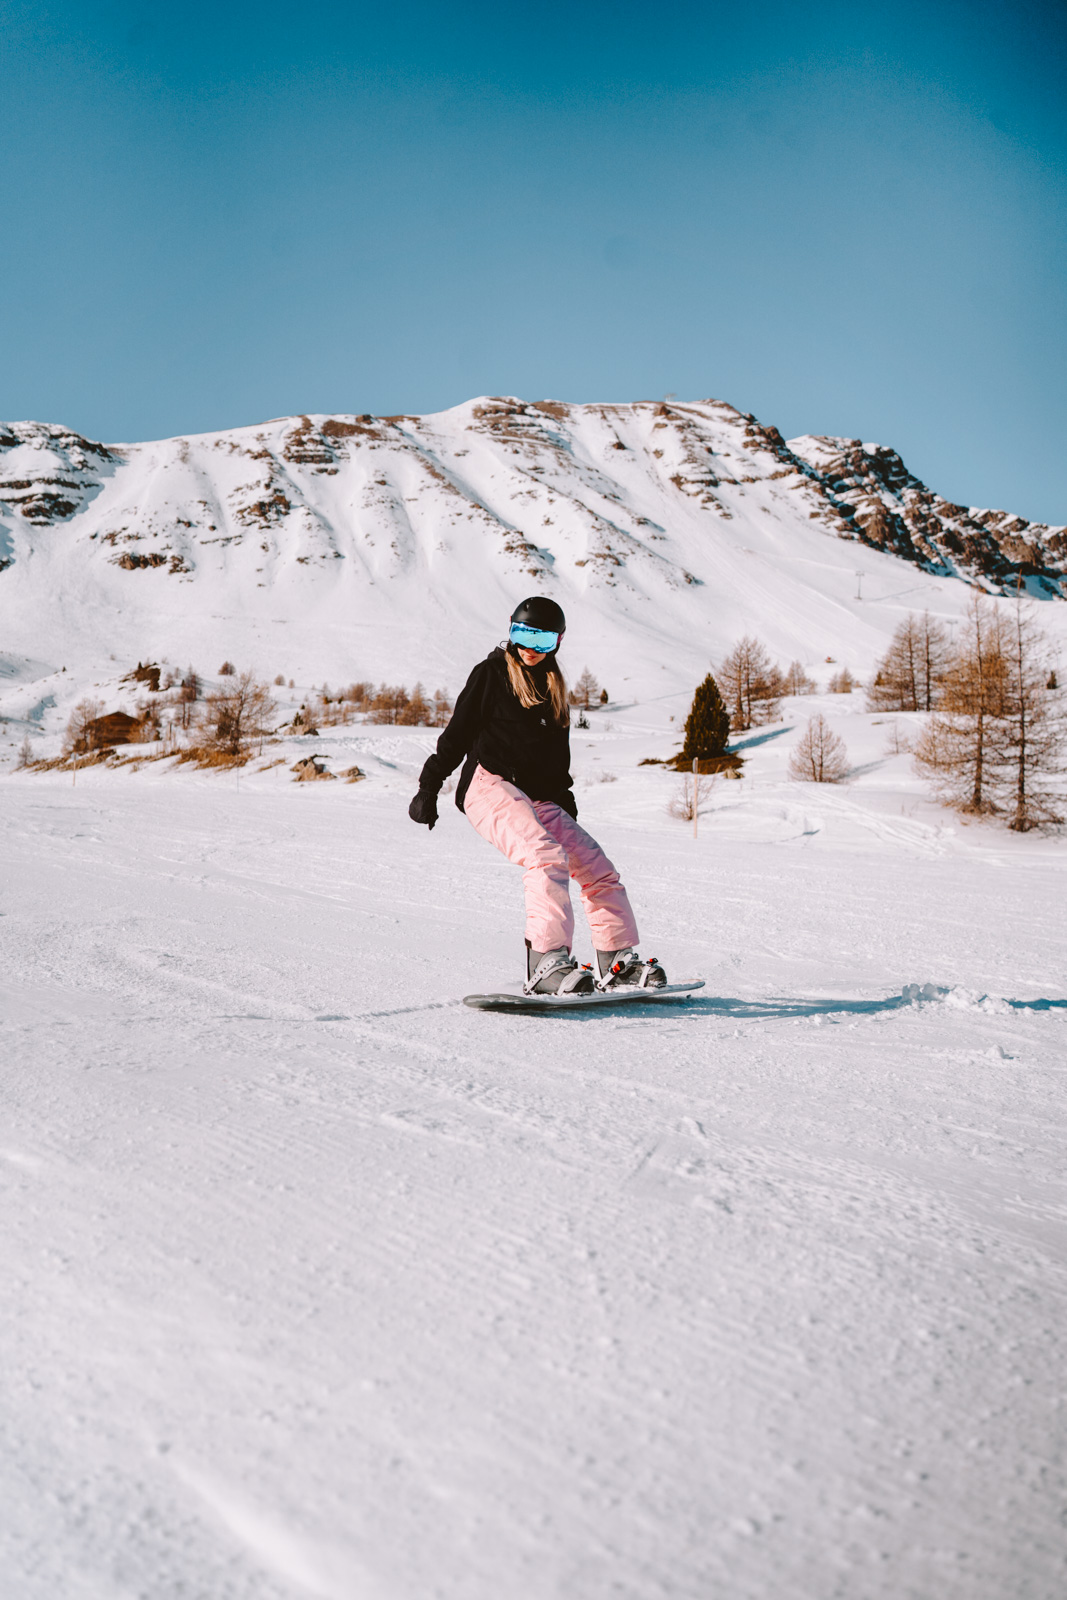 Snowboard & Ski - Vars la forêt blanche